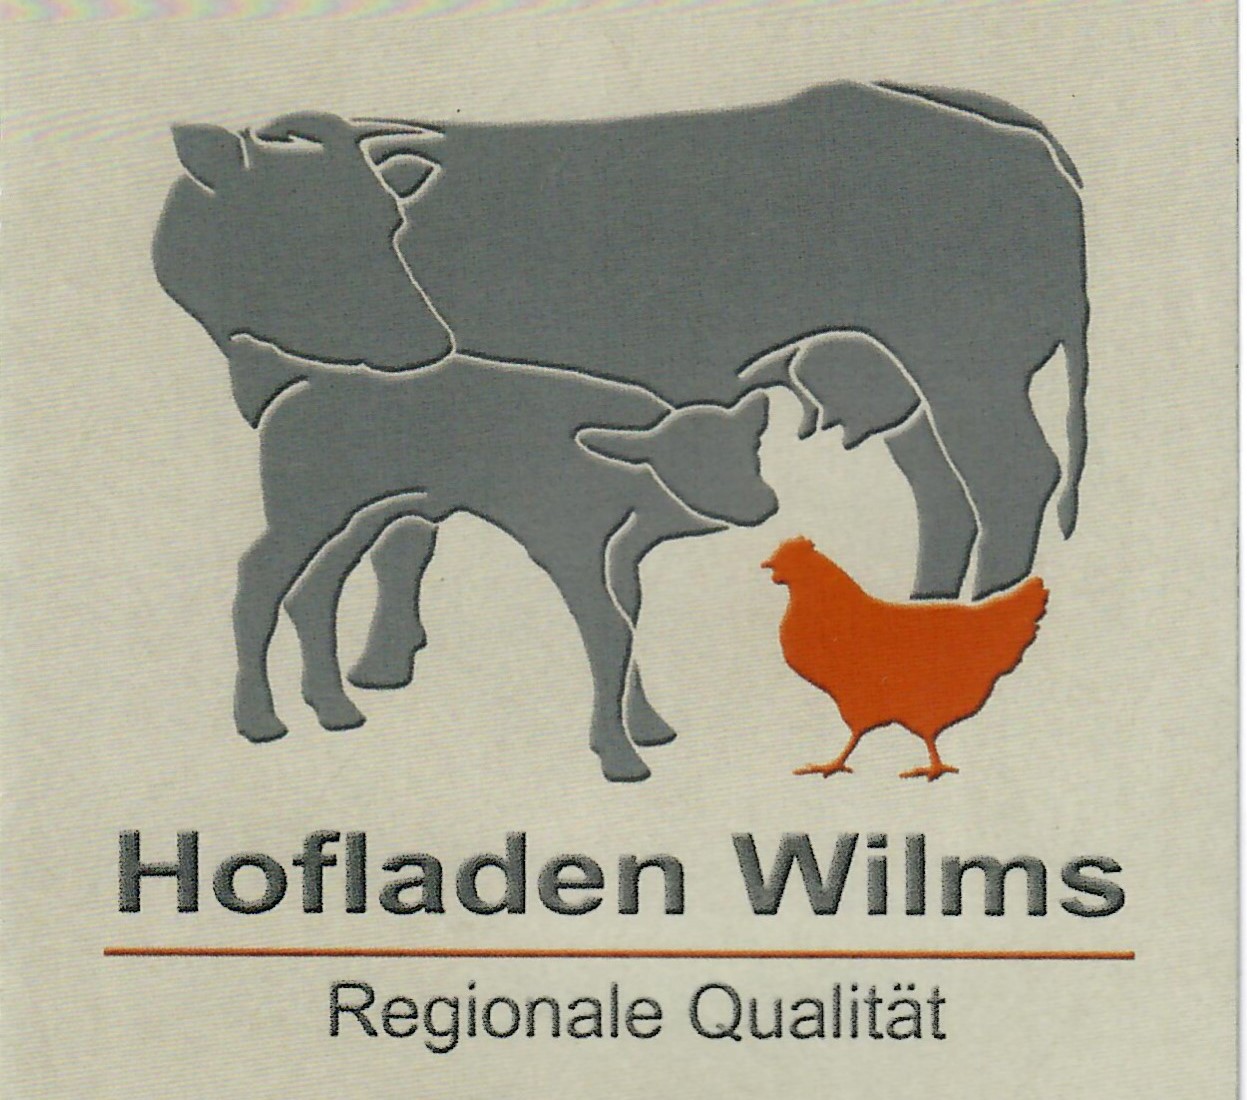 Hofladen Wilms